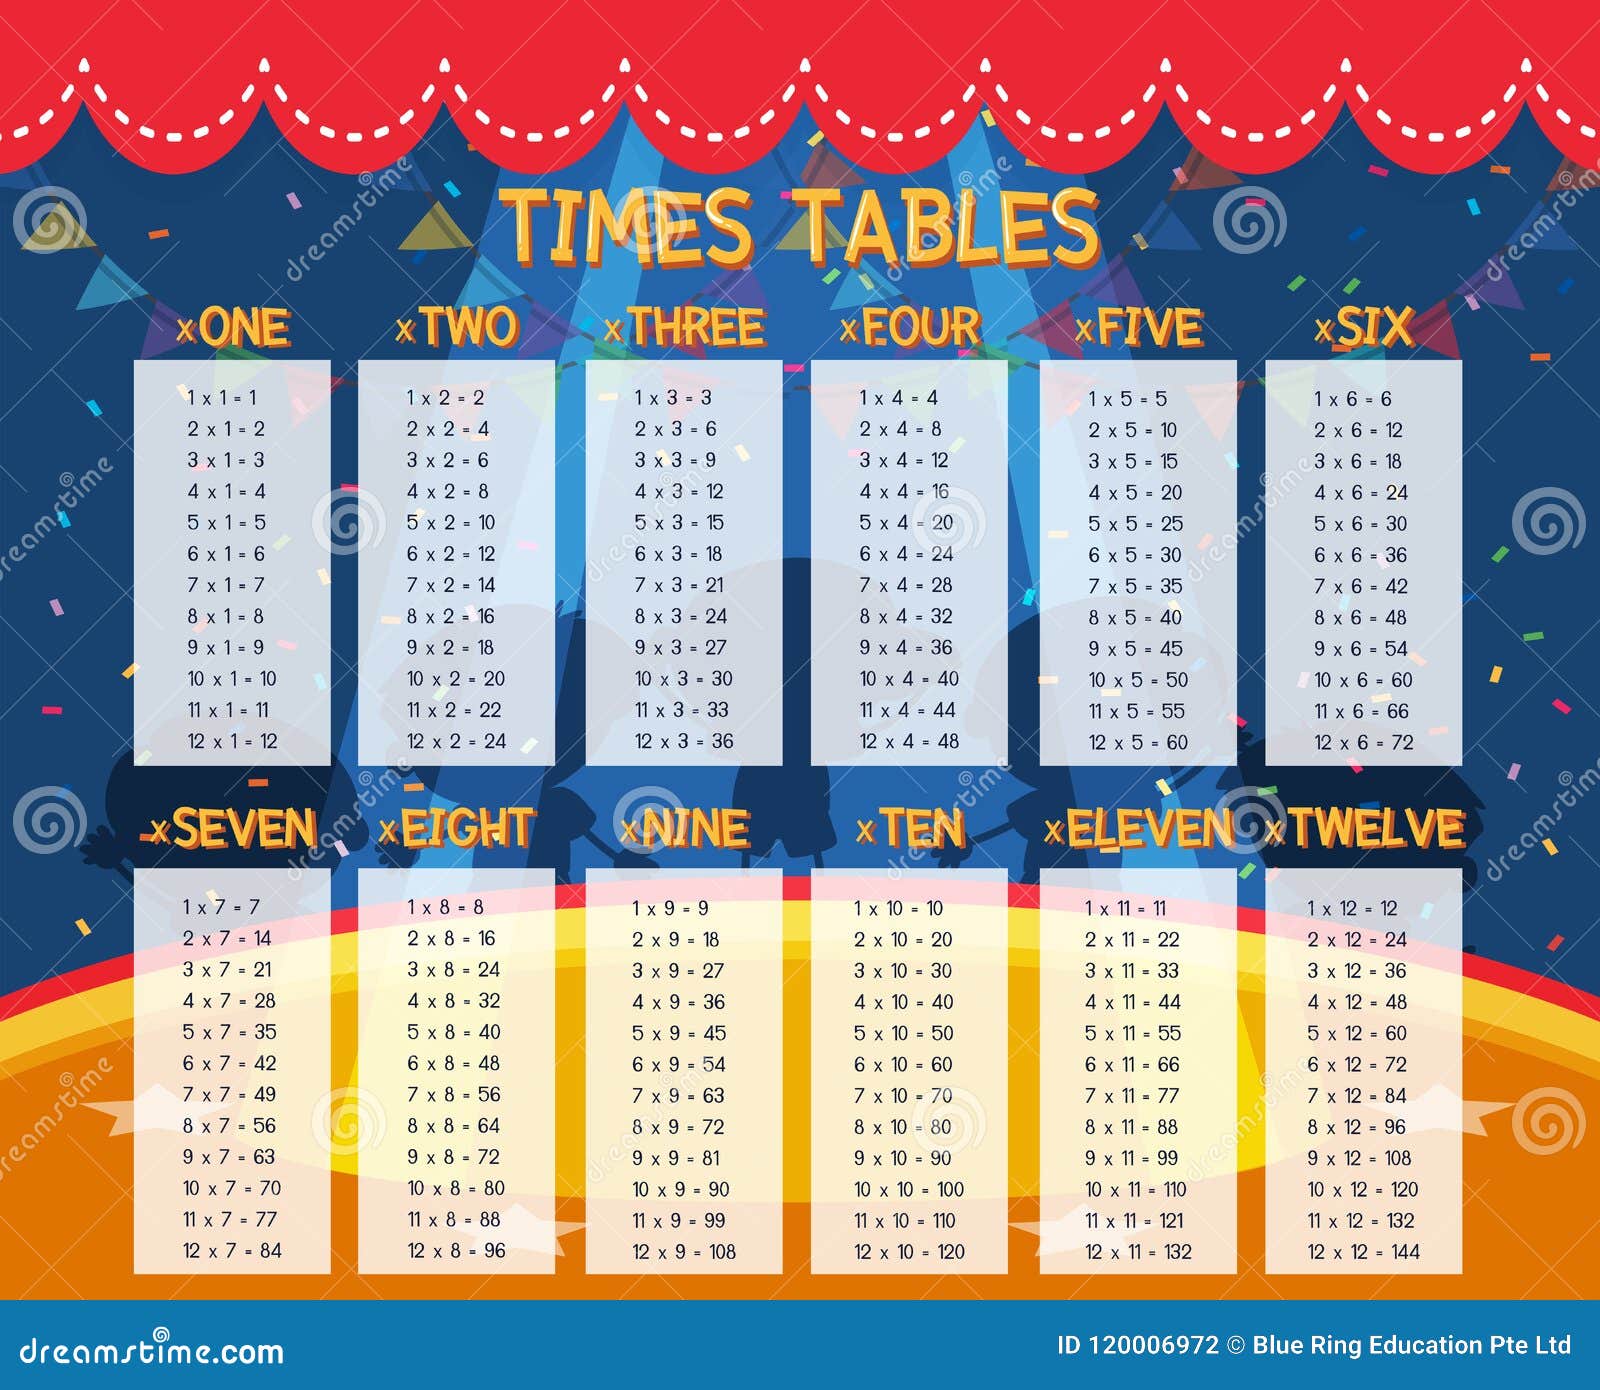 a math times tables